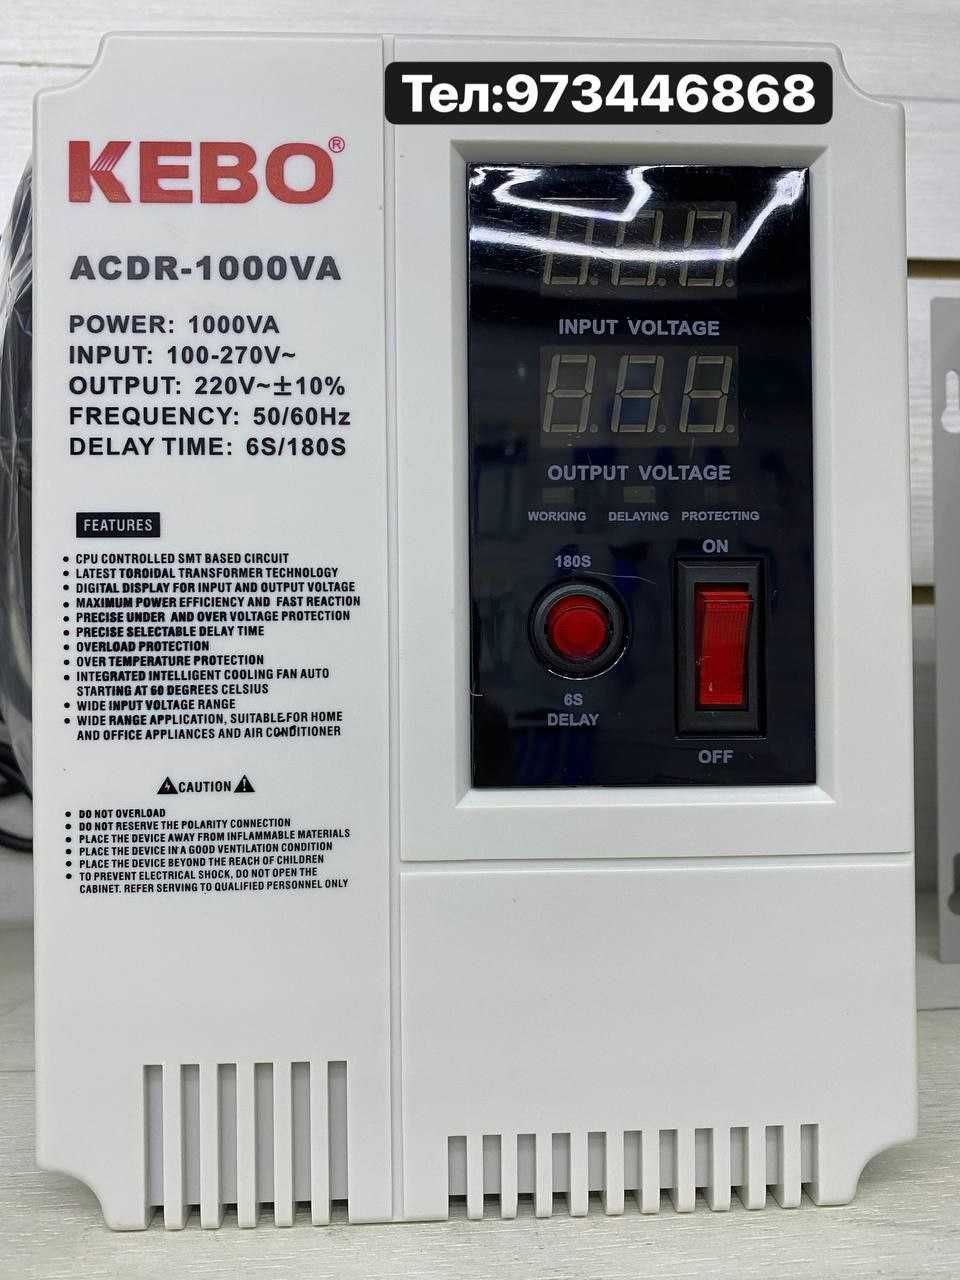 Стабилизатор тока KEBO 500VA